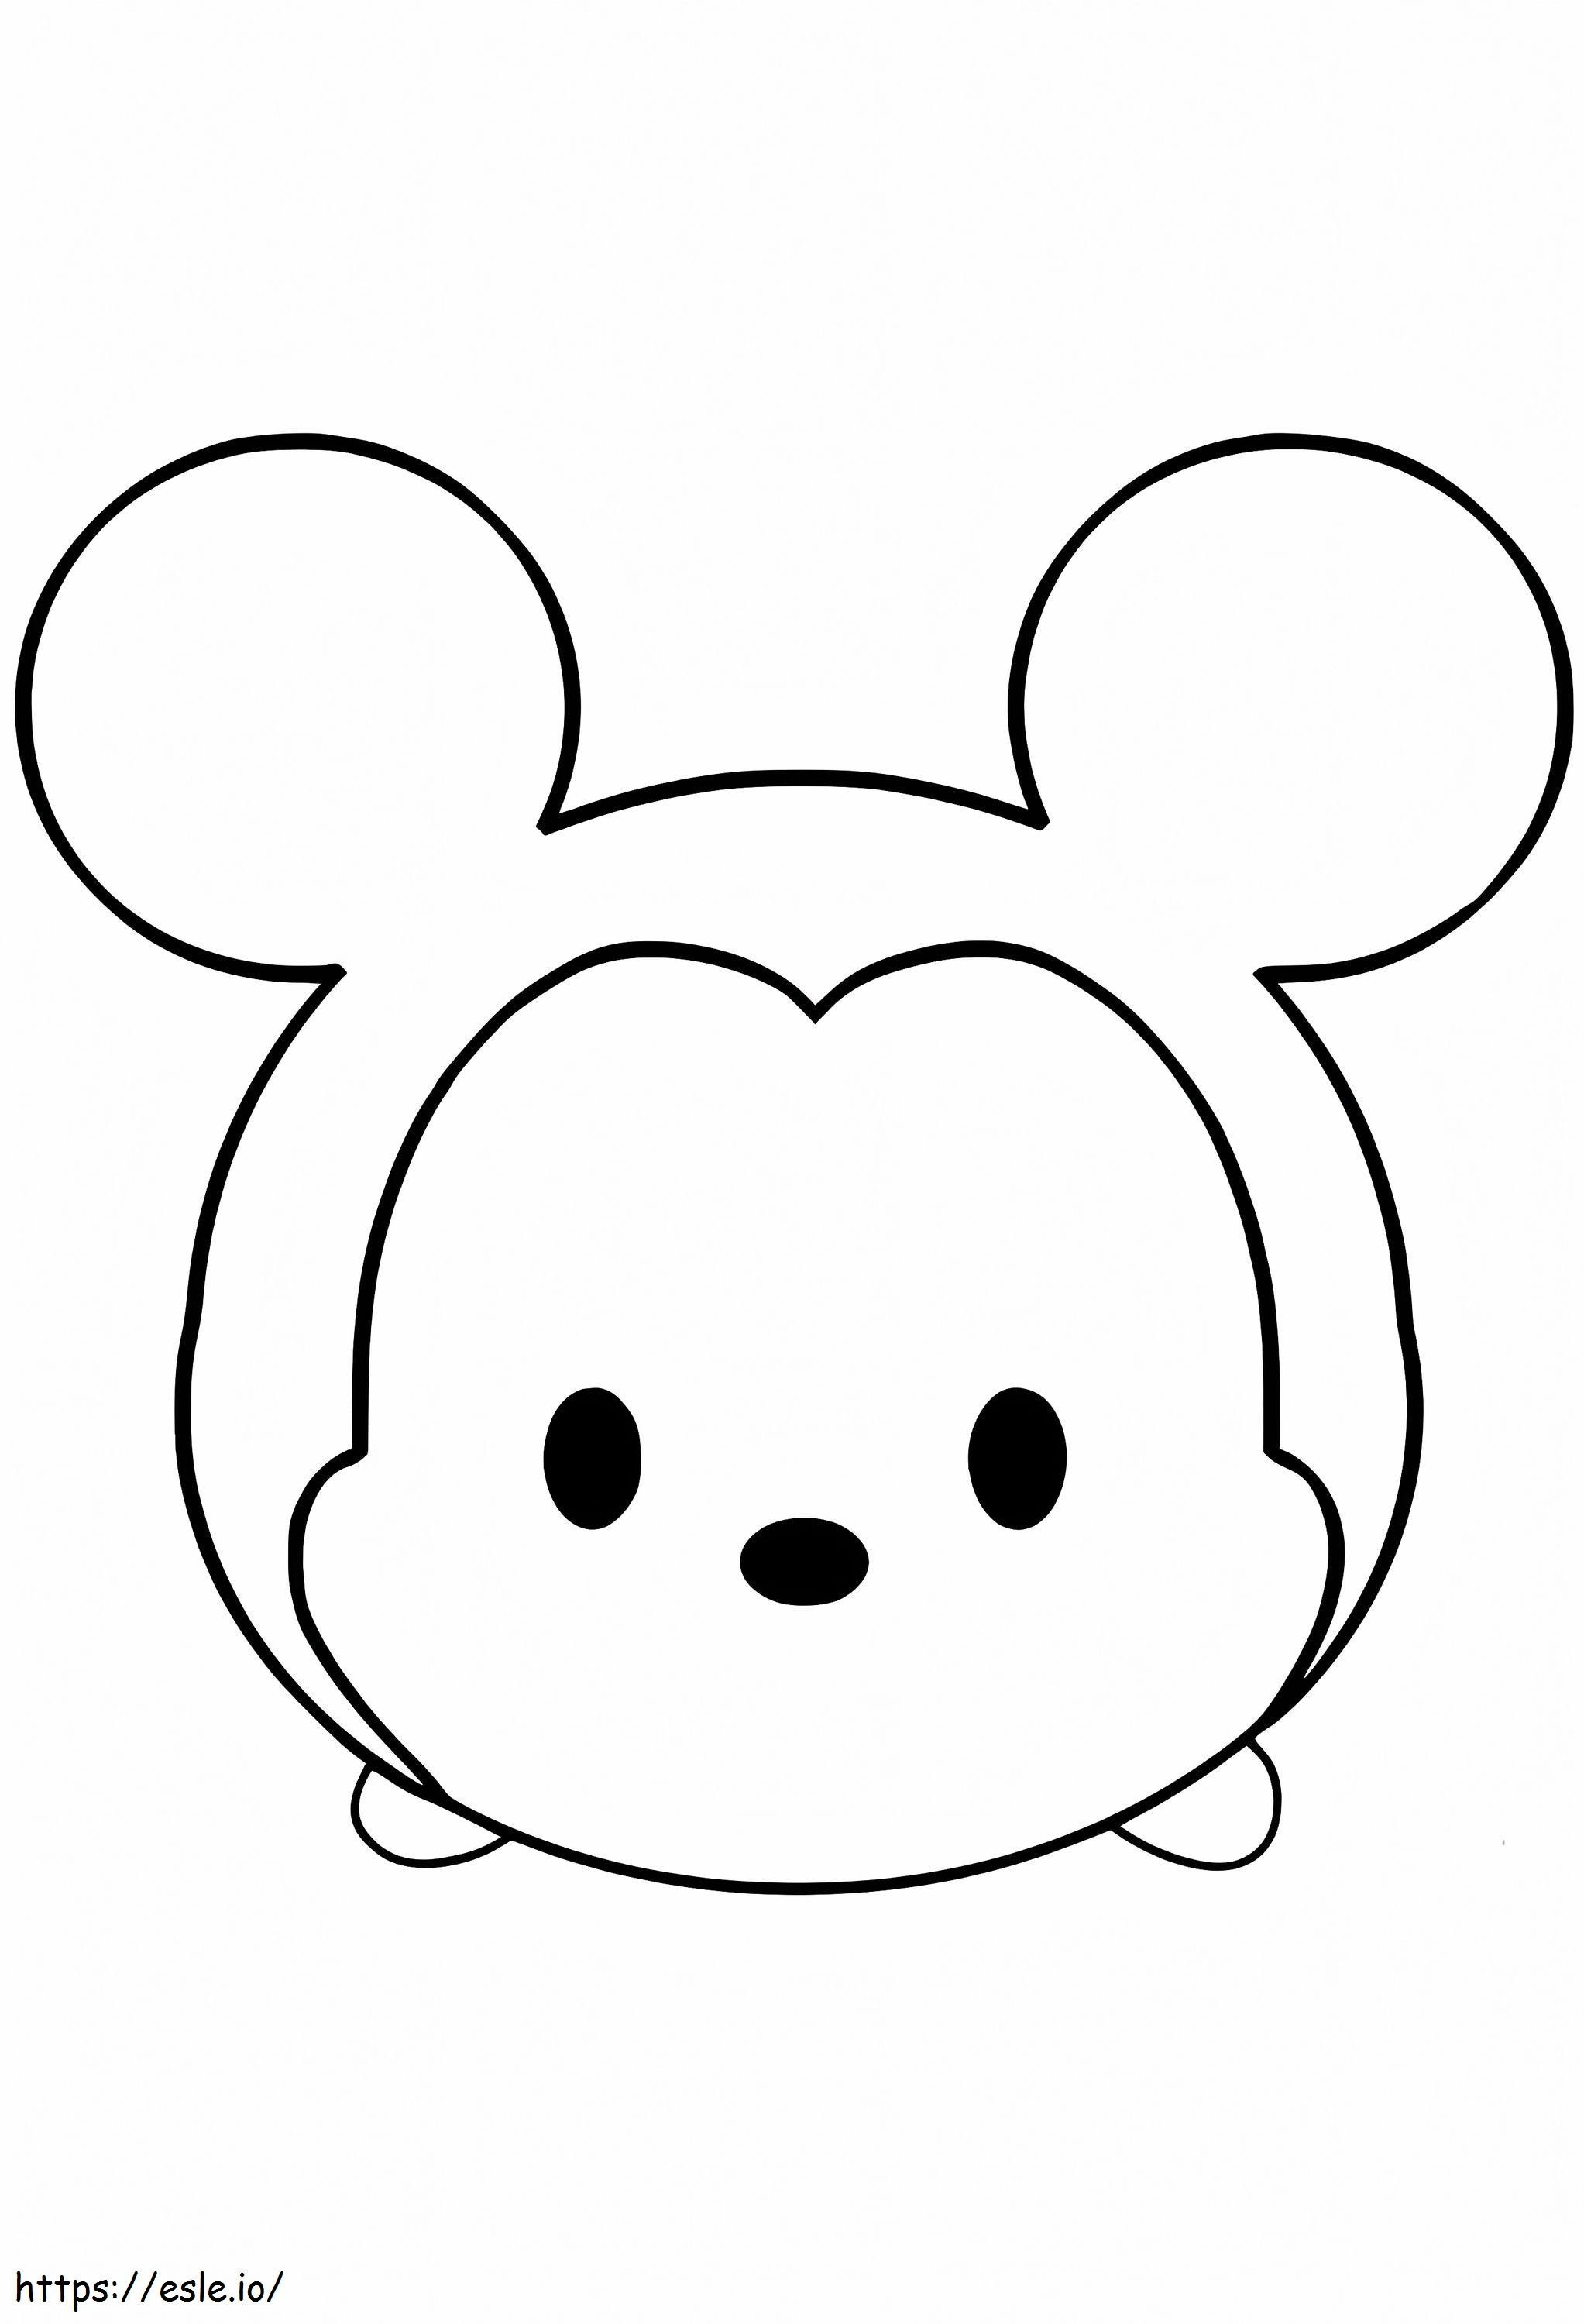 Emoji lindo del ratón para colorear